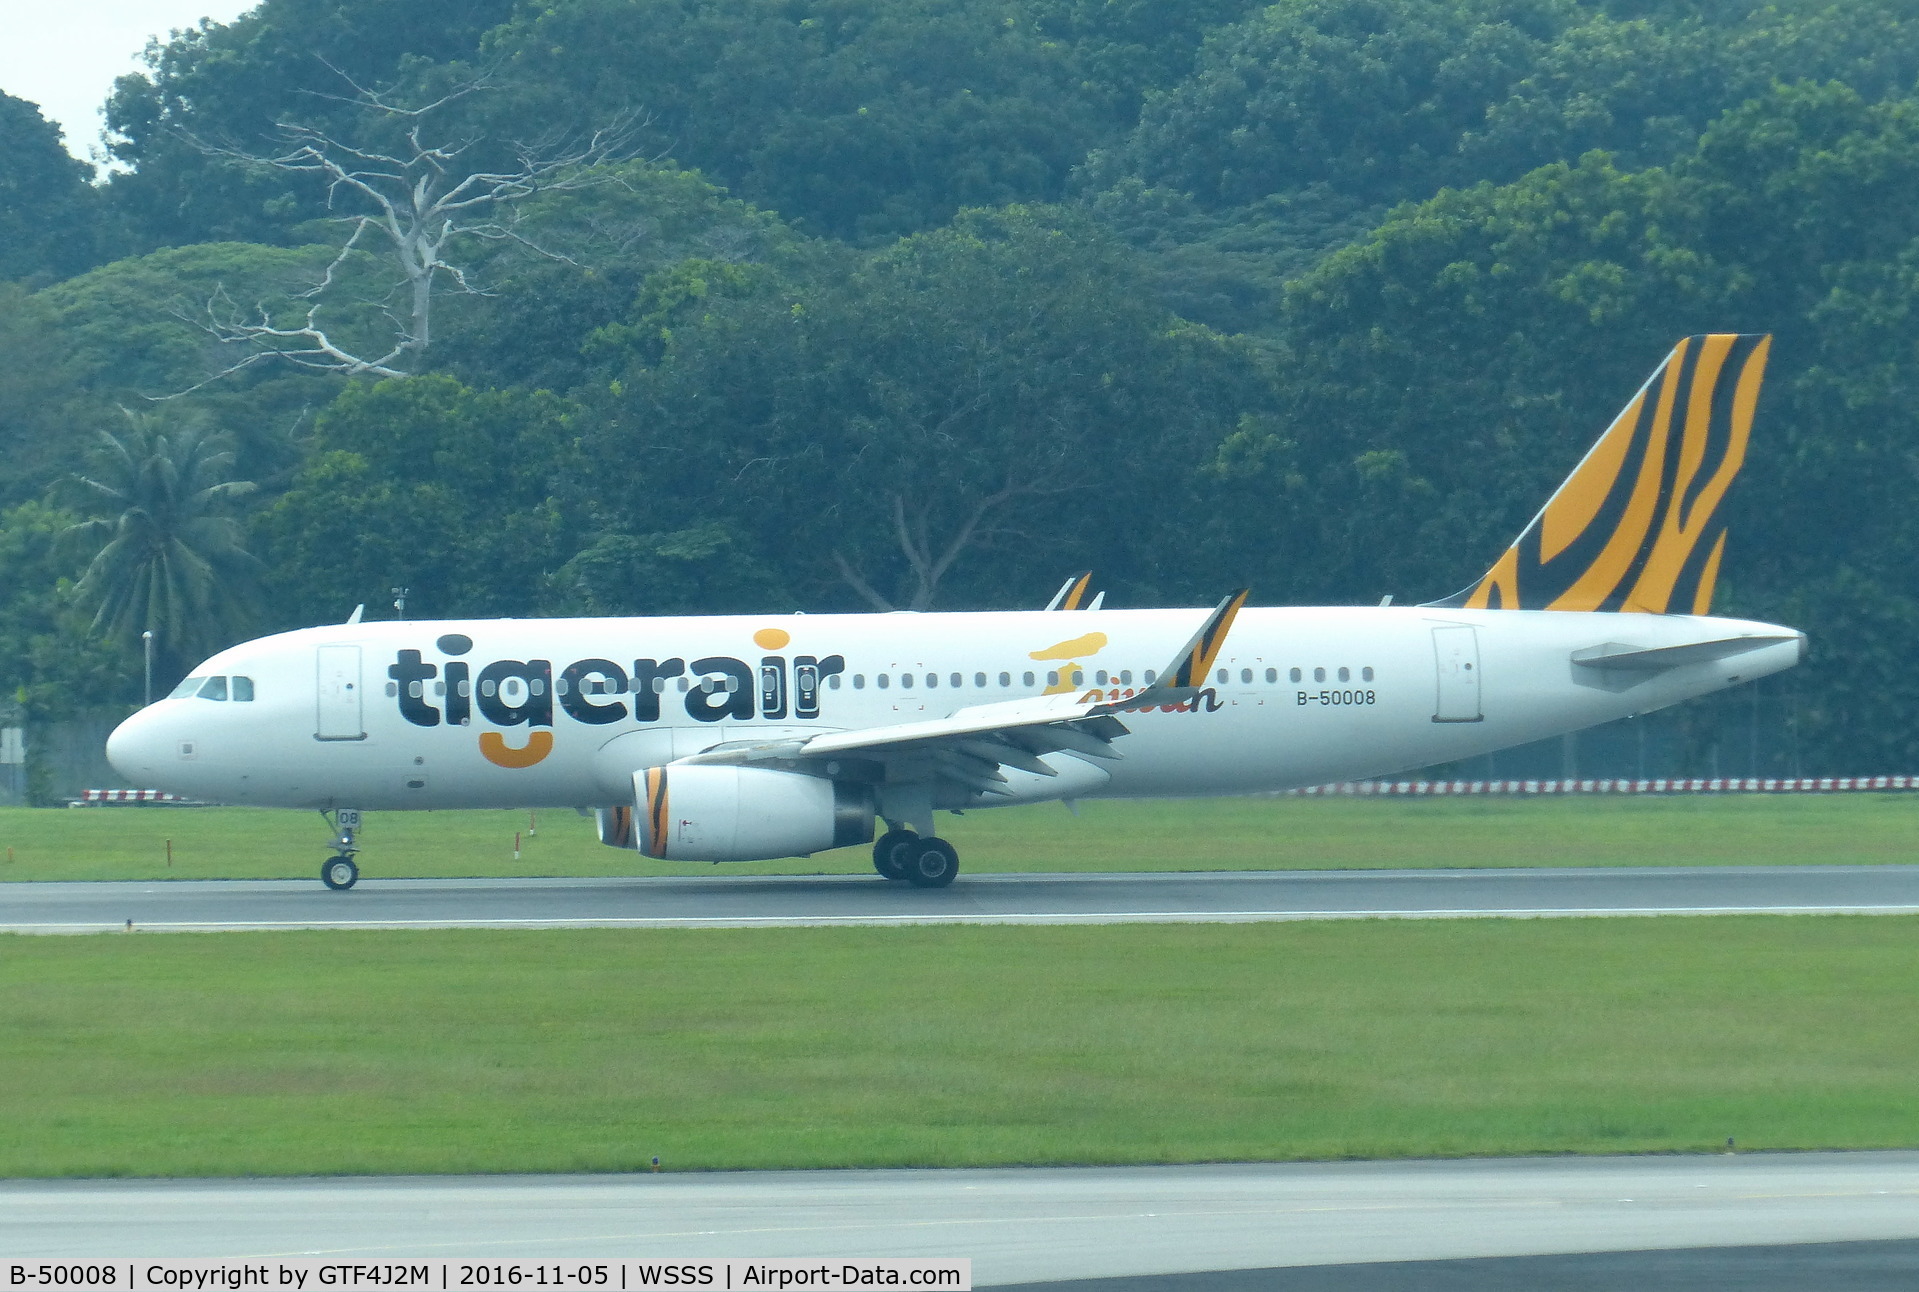 B-50008, 2015 Airbus A320-232 C/N 6700, B-50008  Tigerair Taiwan  at Singapore 5.11.16